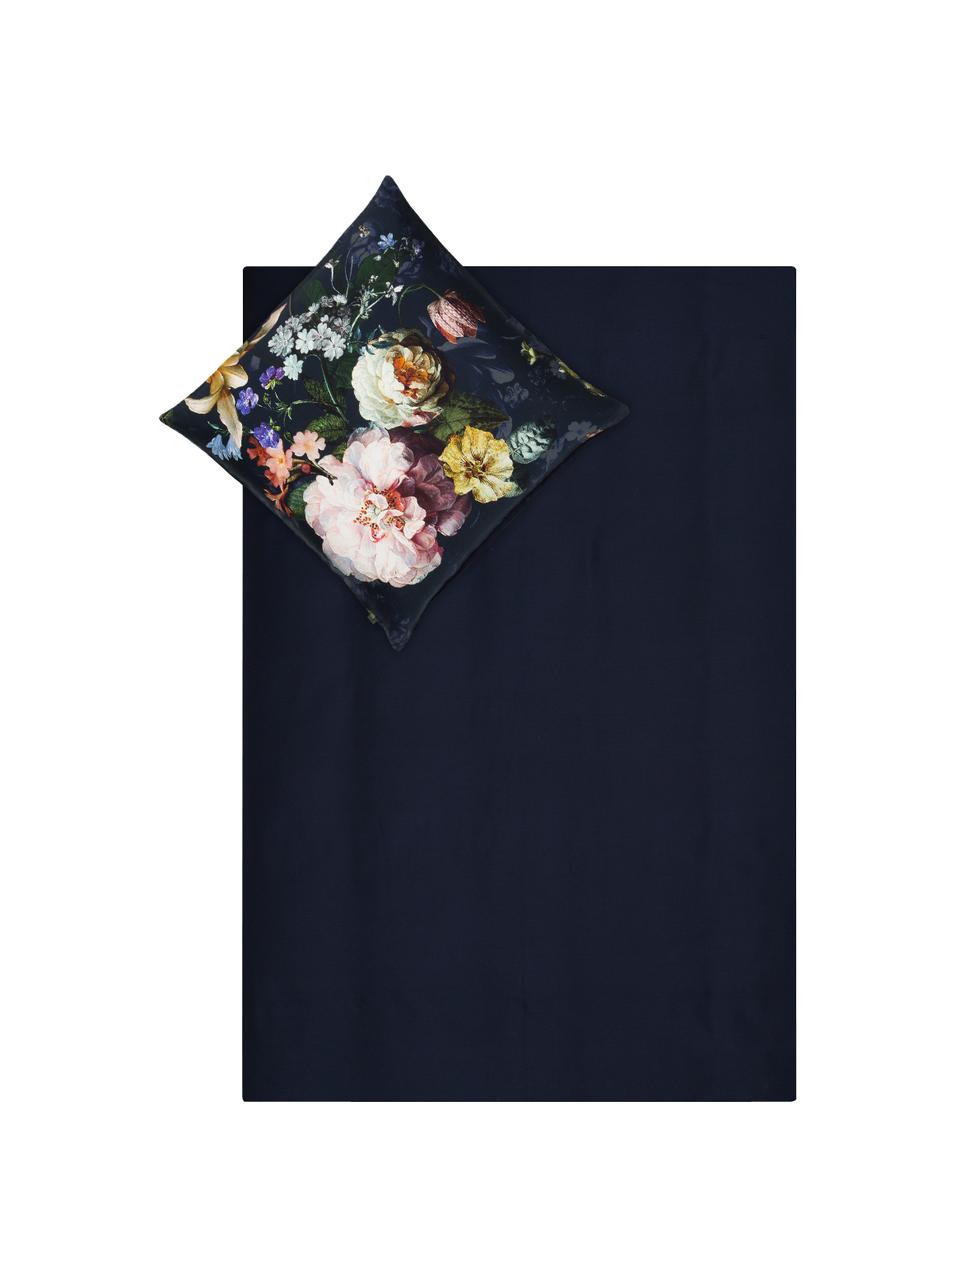 Dwustronna pościel z satyny bawełnianej  Fleur, Przód: ciemny niebieski, biały, żółty Tył: ciemny niebieski, 135 x 200 cm